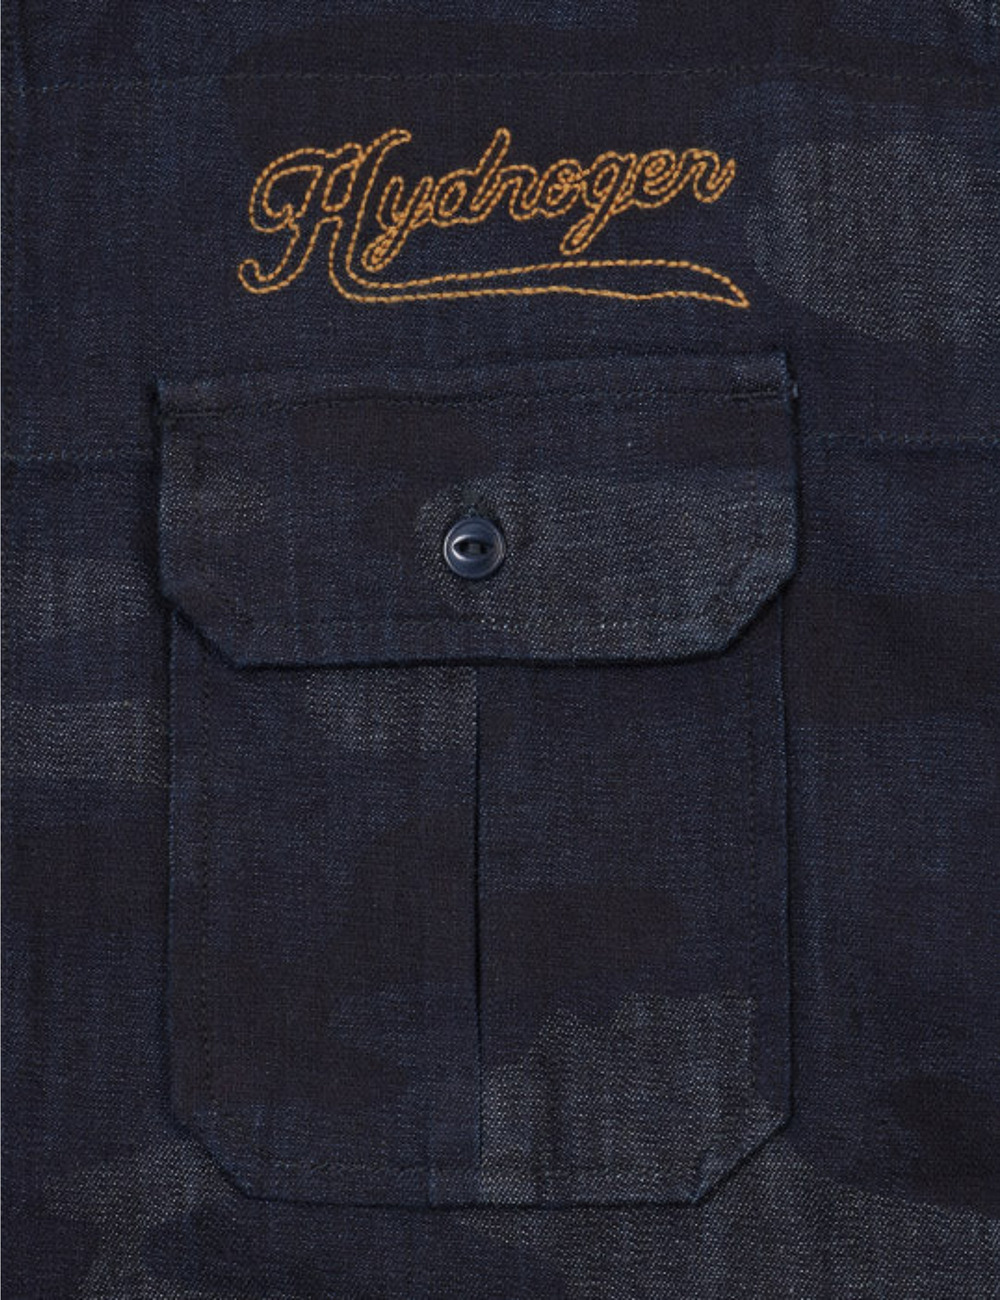 カモフラージュシャツ / CAMOUFLAGE SHIRT 詳細画像 HYDブルー525 5